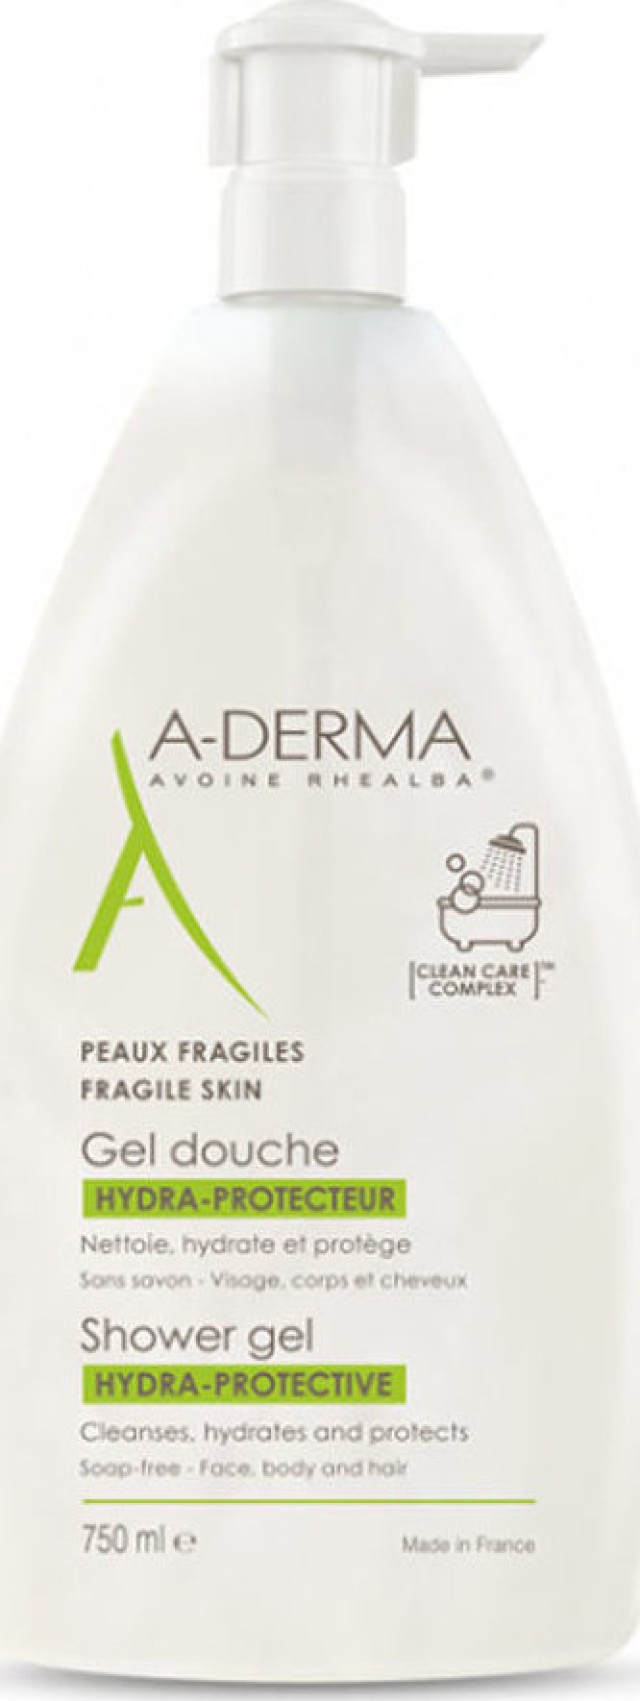 A-derma Gel Douche Hydra - Protecteur Υδατοπροστατευτικό Τζελ Καθαρισμού Για Πρόσωπο Σώμα & Μαλλιά 750ml